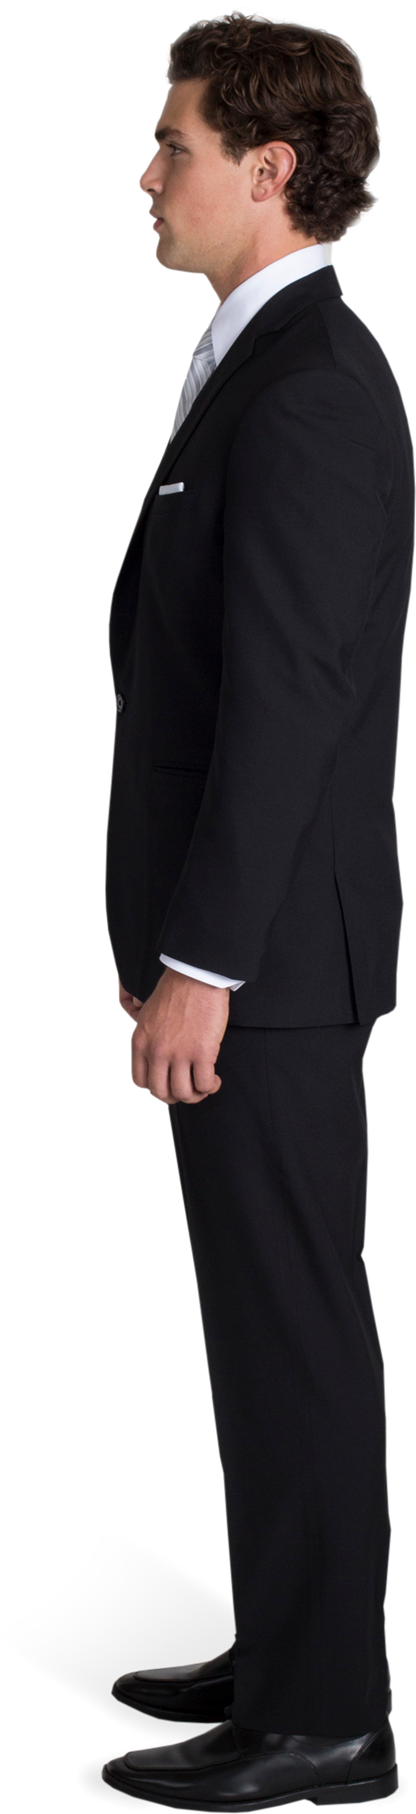 Black Notch Lapel Suit With Silver Tie - Man Black Suit Side Clipart (1188x1980), Png Download